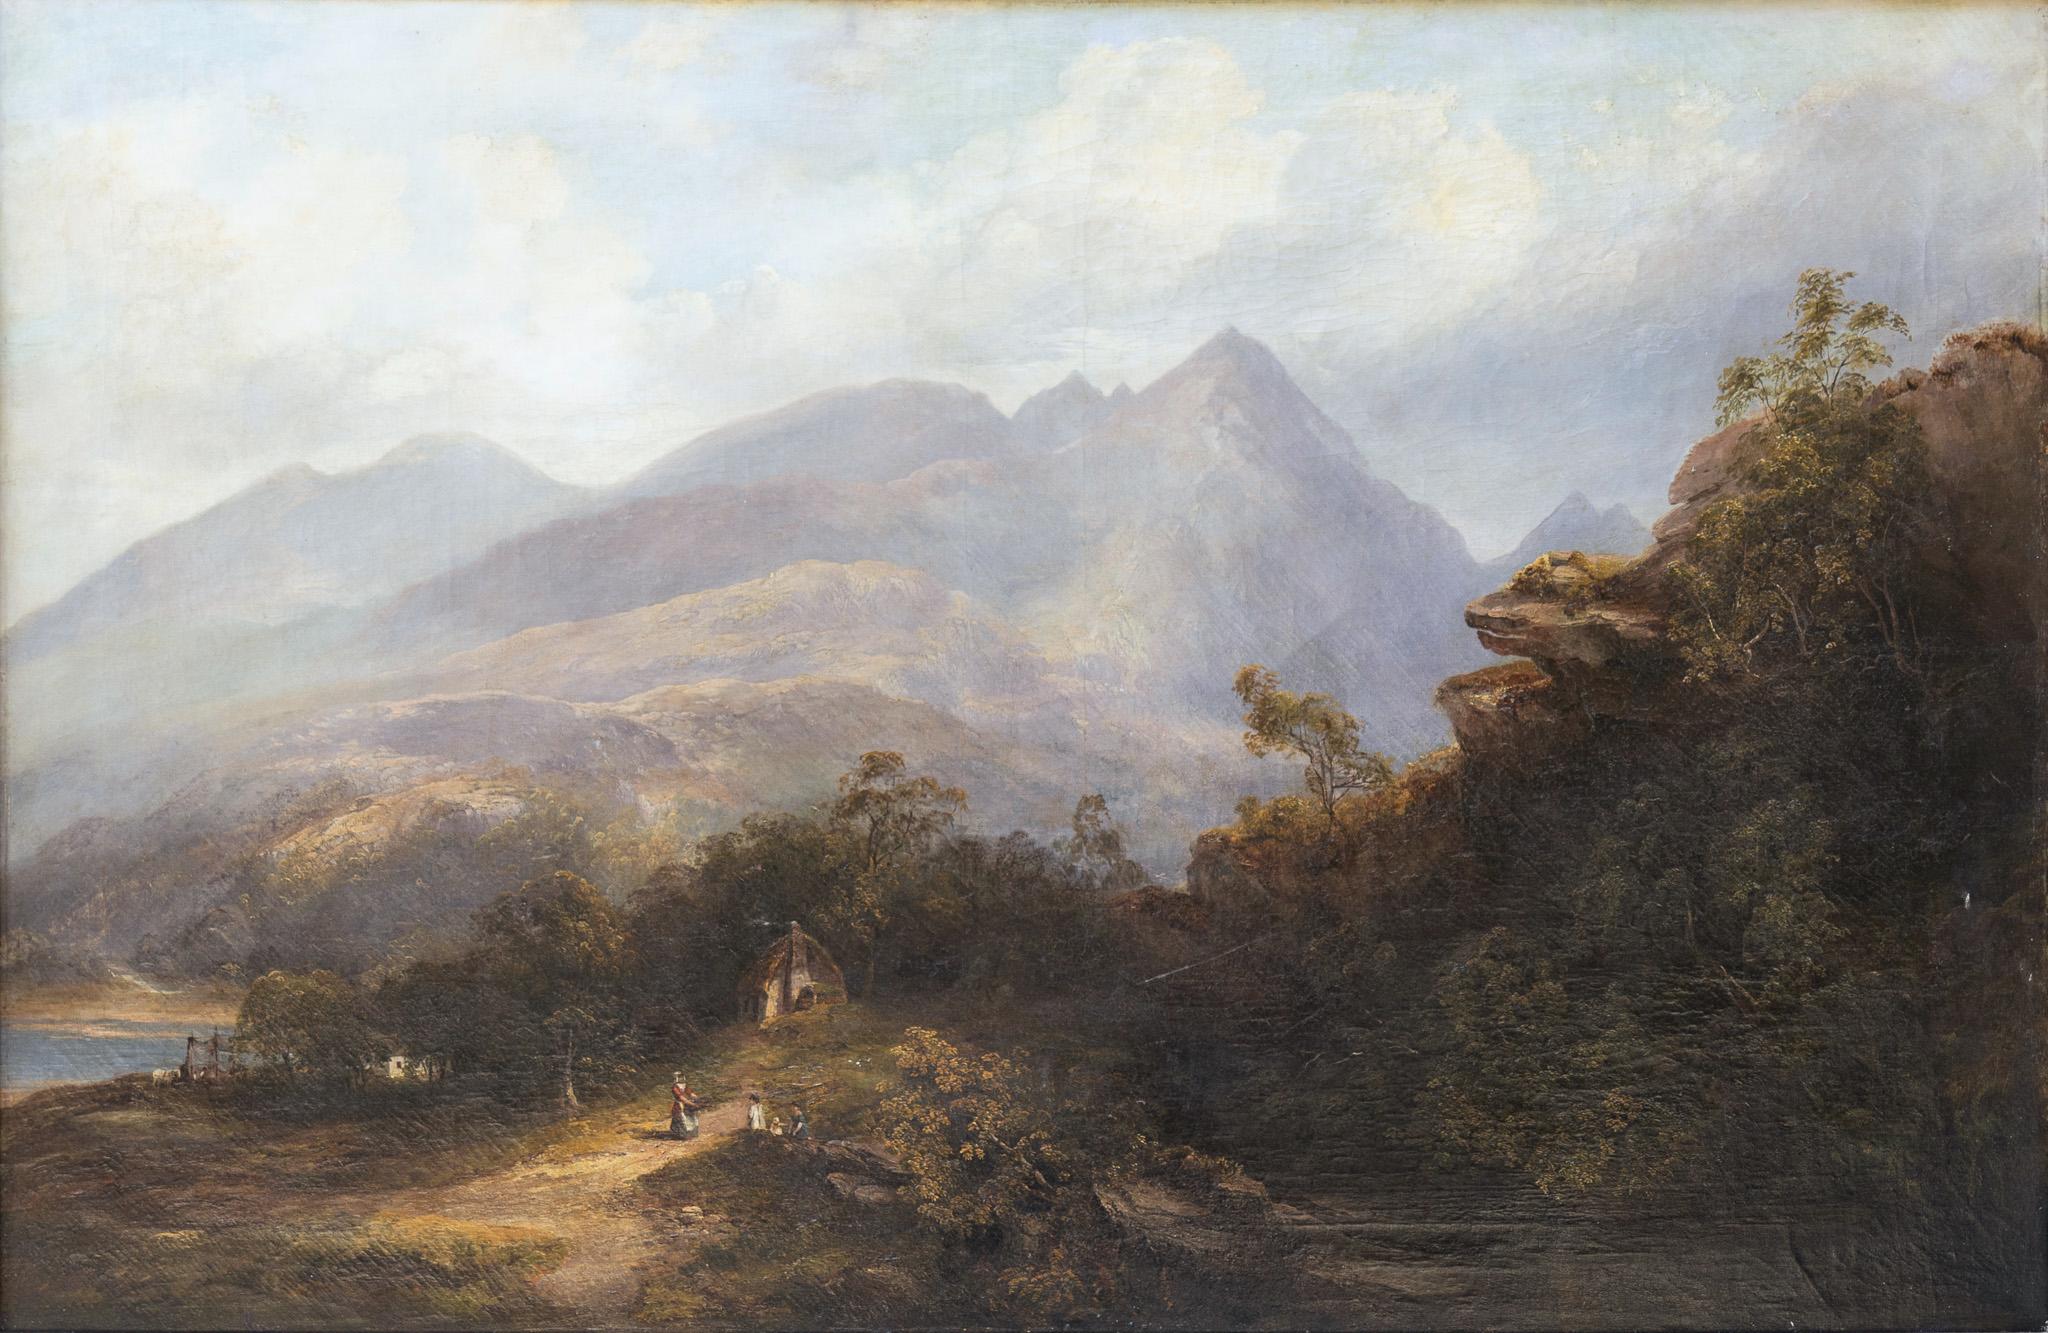 Unknown Landscape Painting - Antique European Landscape with Mountains